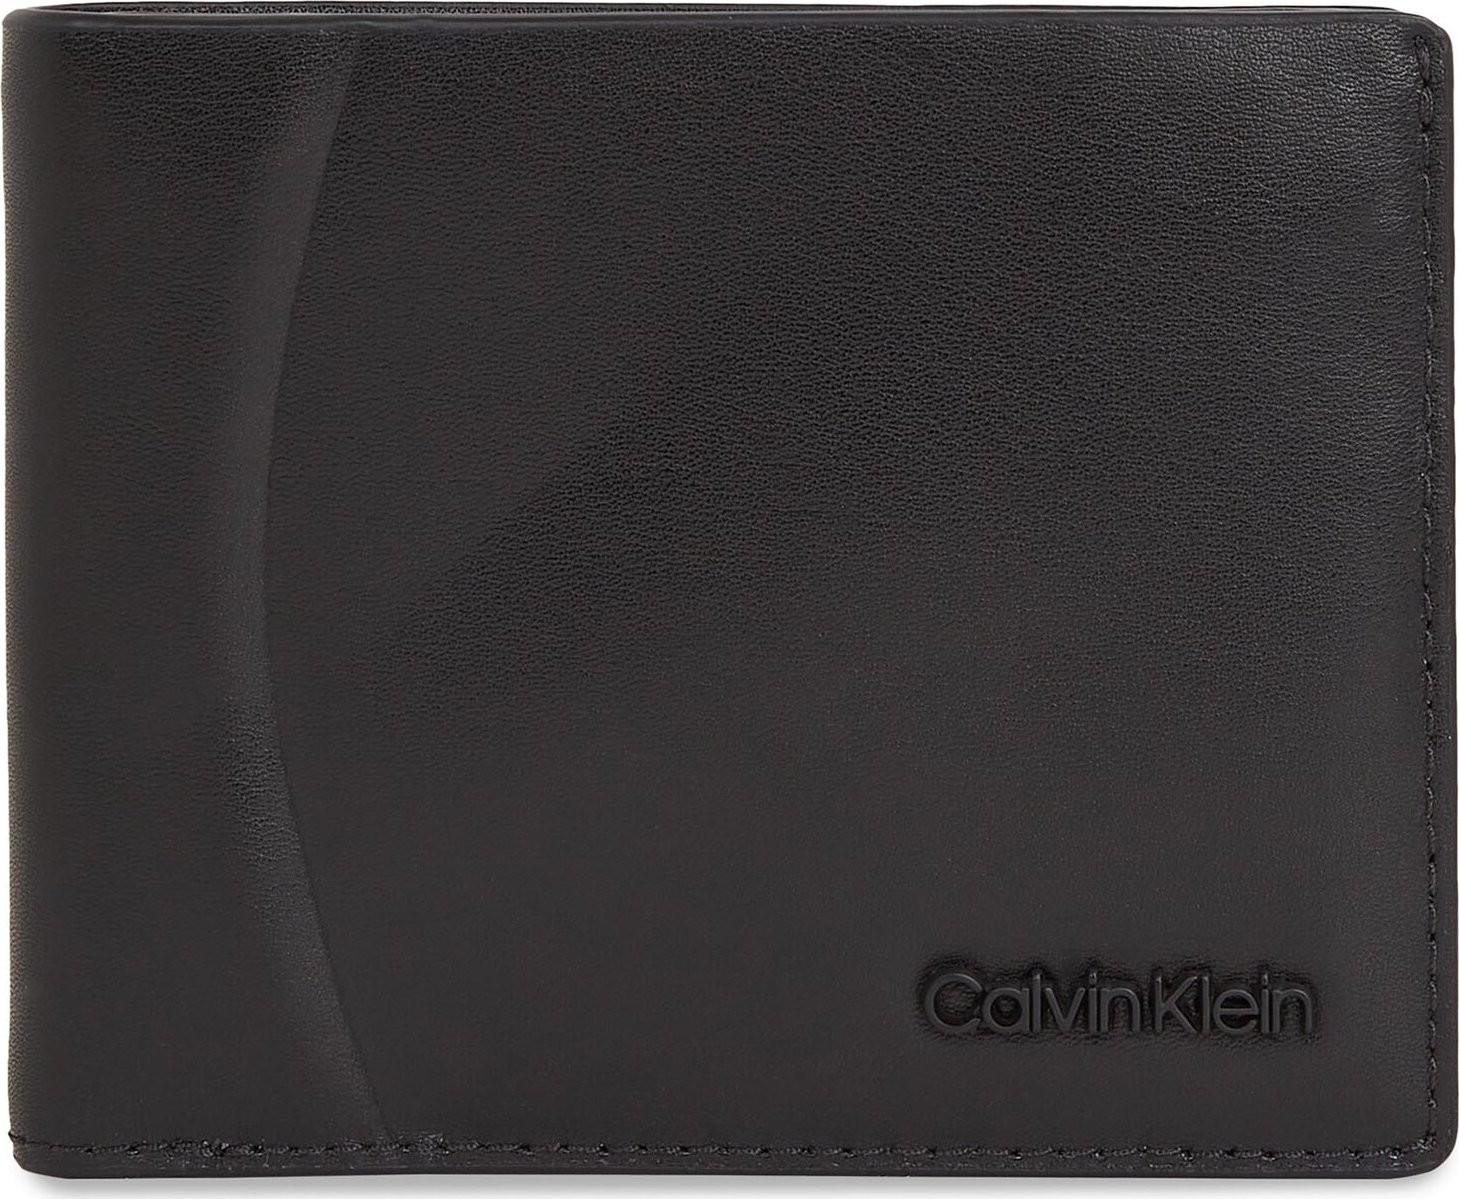 Velká pánská peněženka Calvin Klein Minimal Focus K50K511694 Ck Black Smooth BEH